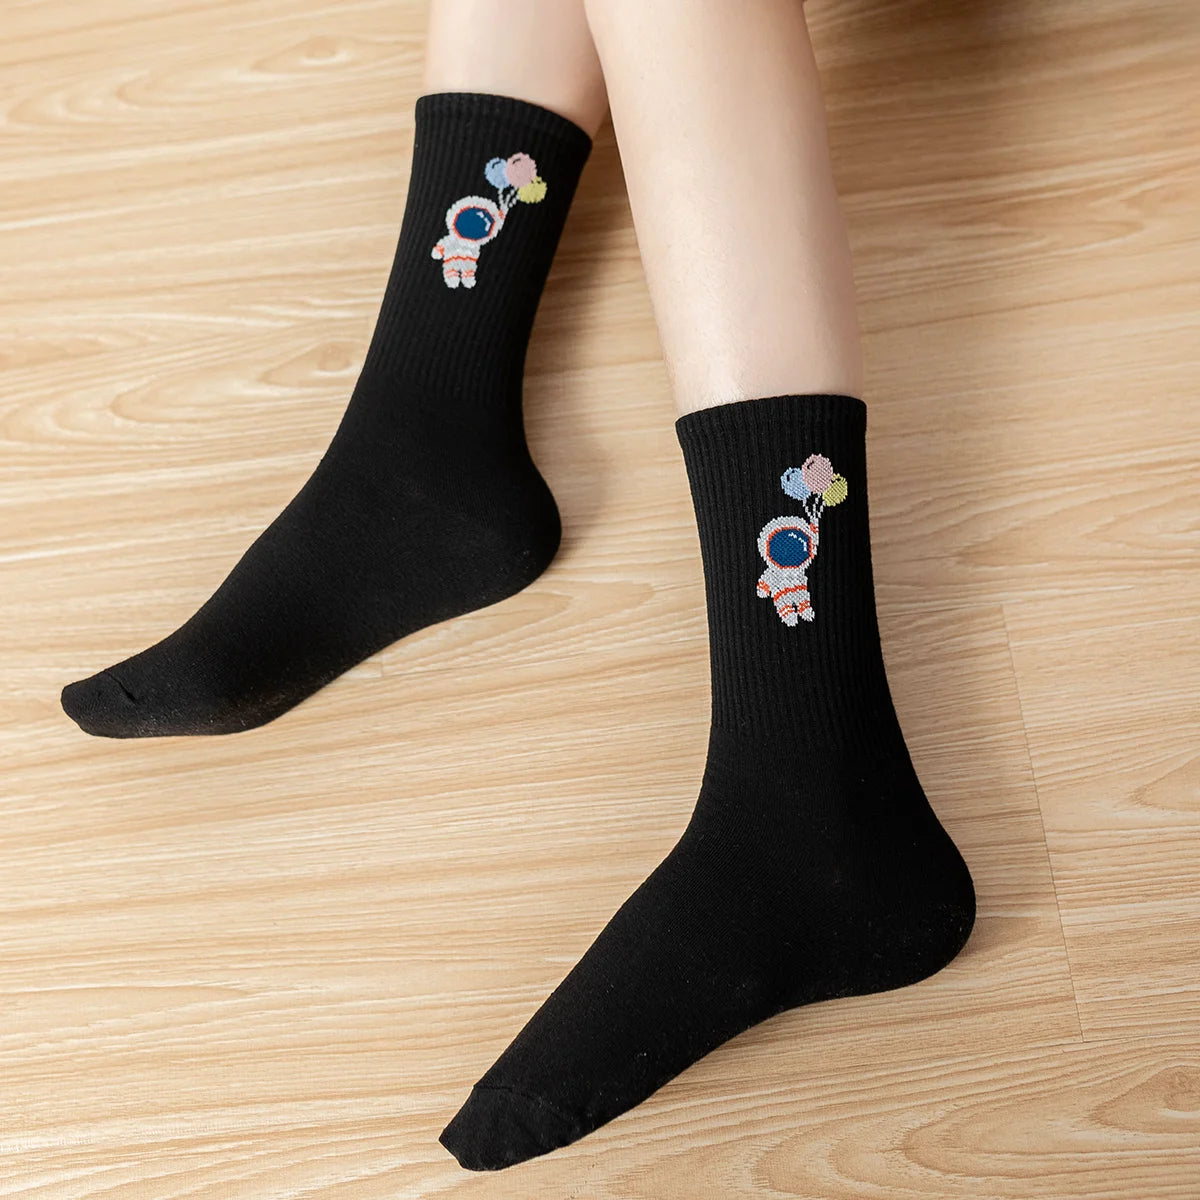 Chaussettes noir adultes en coton représentant des petits astronautes | Chaussettes abordables et de haute qualité | Un excellent choix pour les adultes qui aiment l'espace et les astronautes